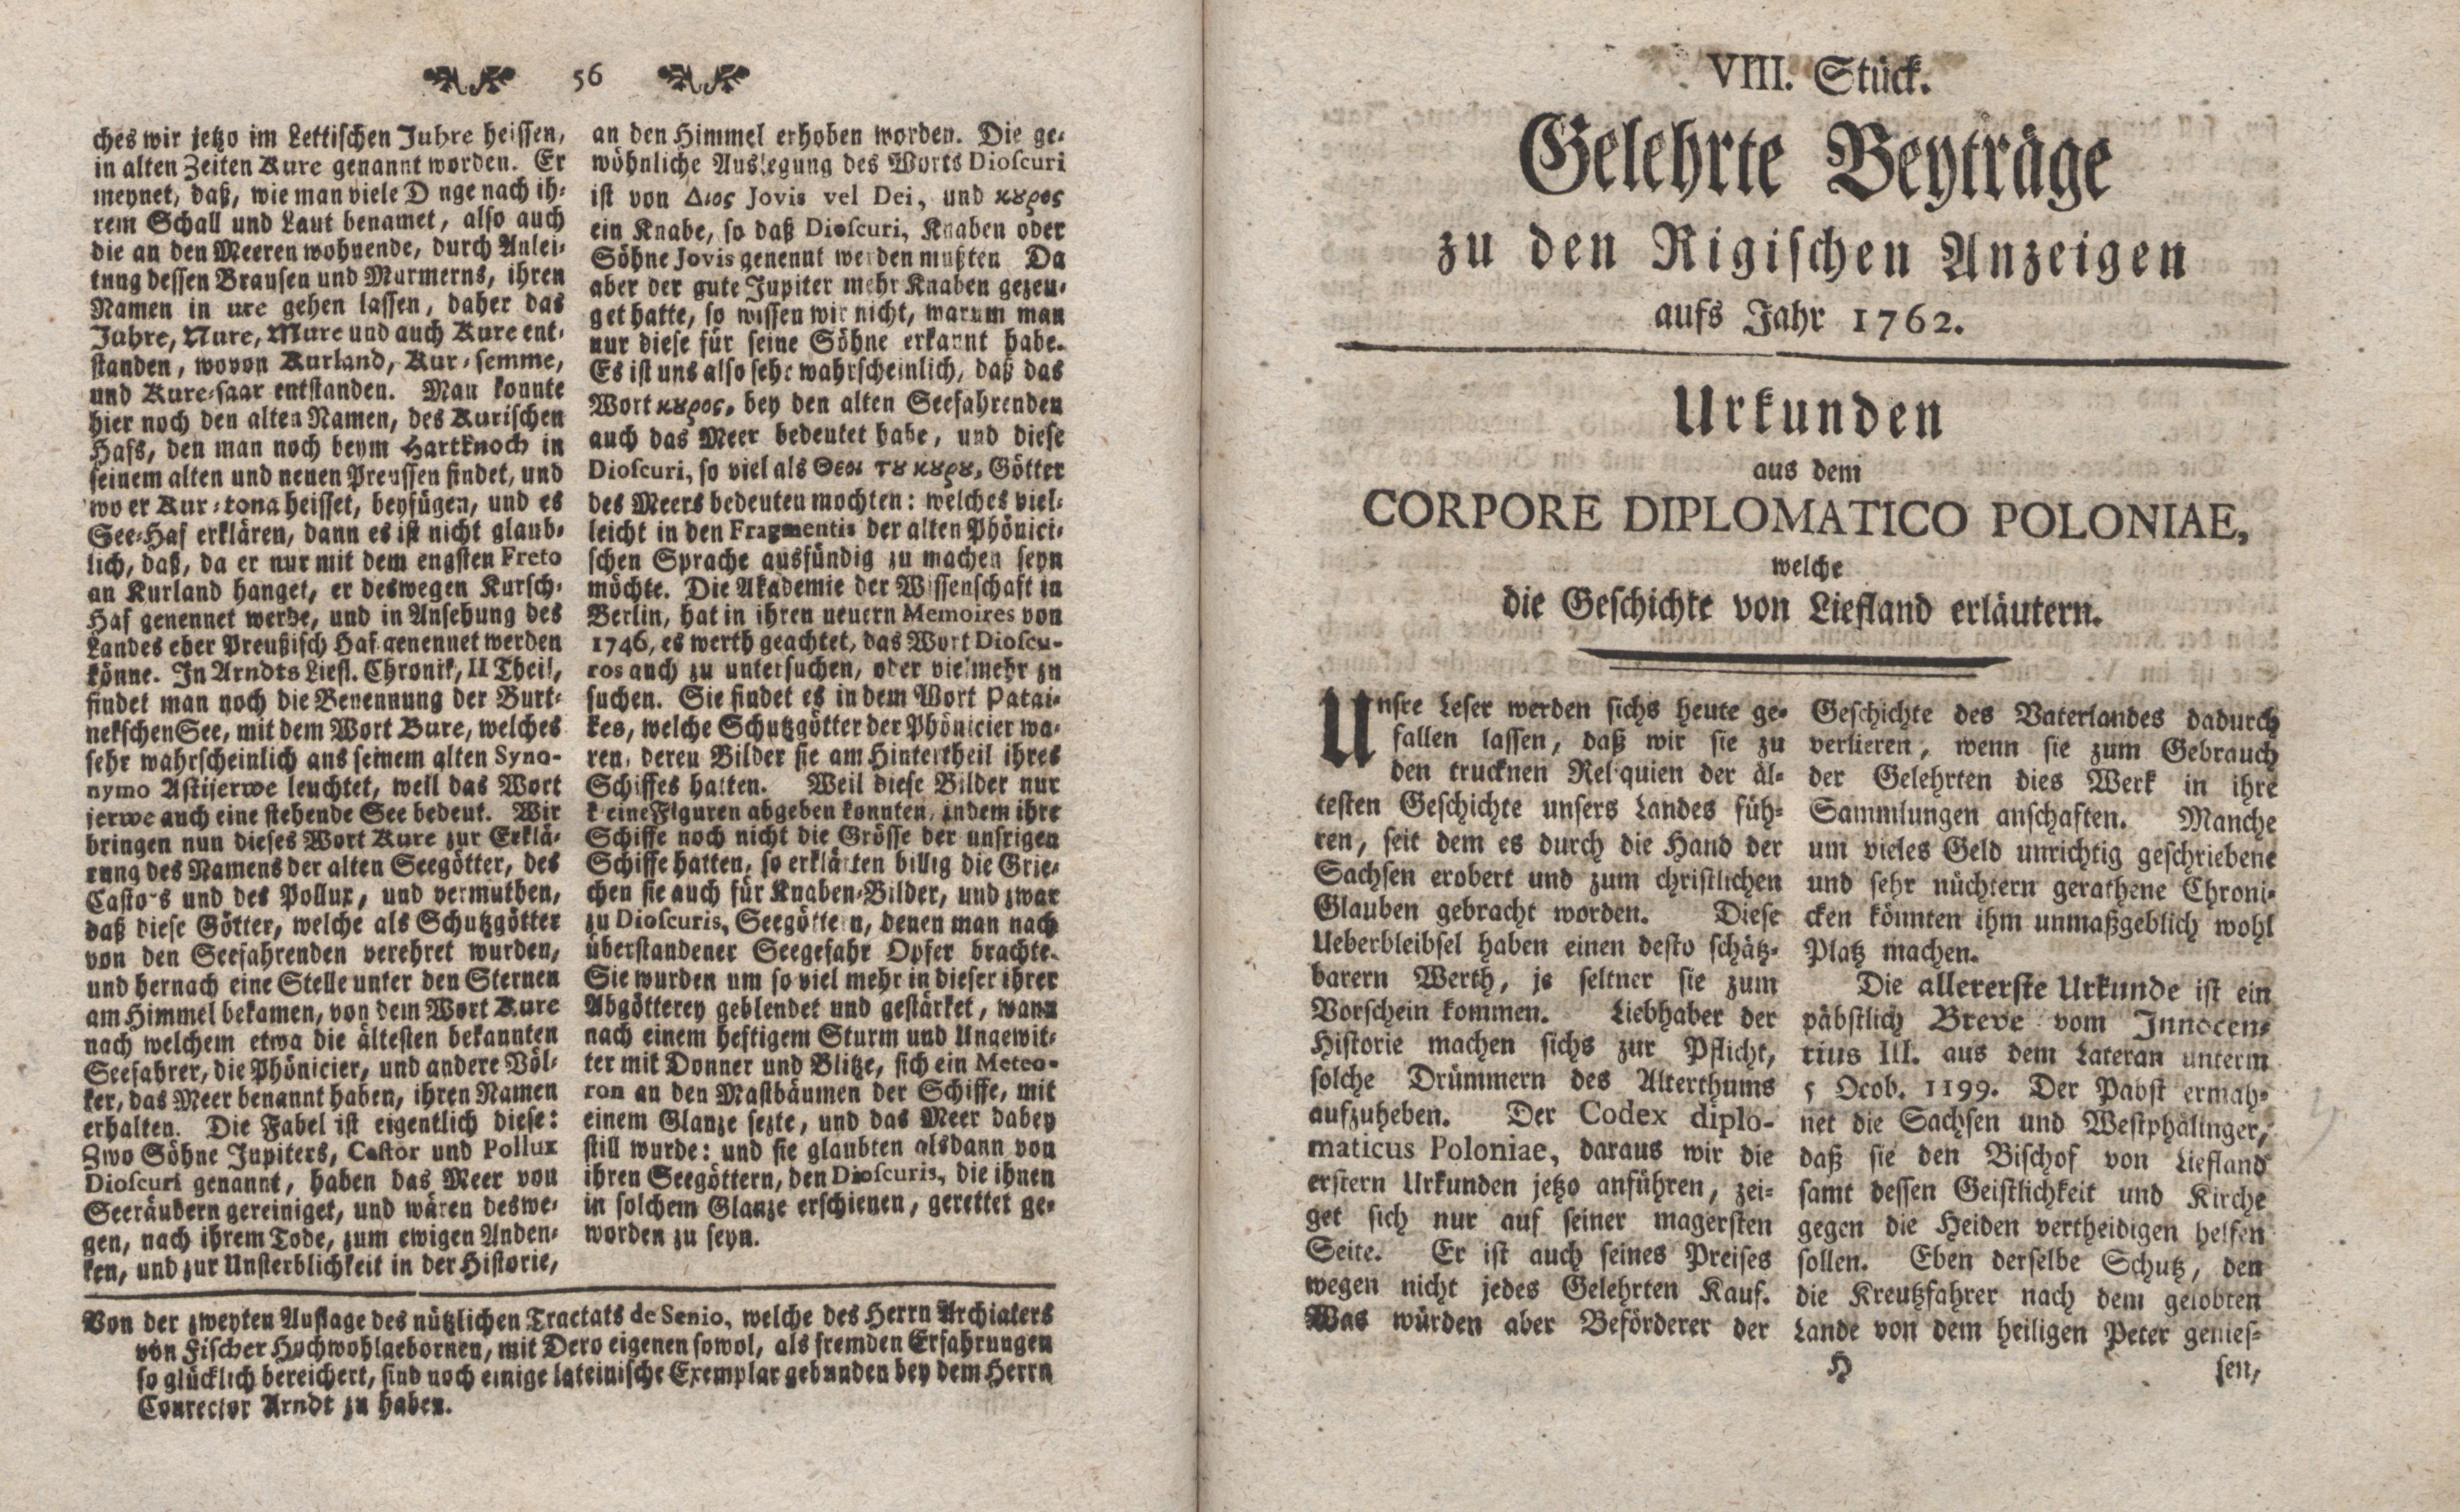 Gelehrte Beyträge zu den Rigischen Anzeigen 1762 (1762) | 29. (56-57) Haupttext